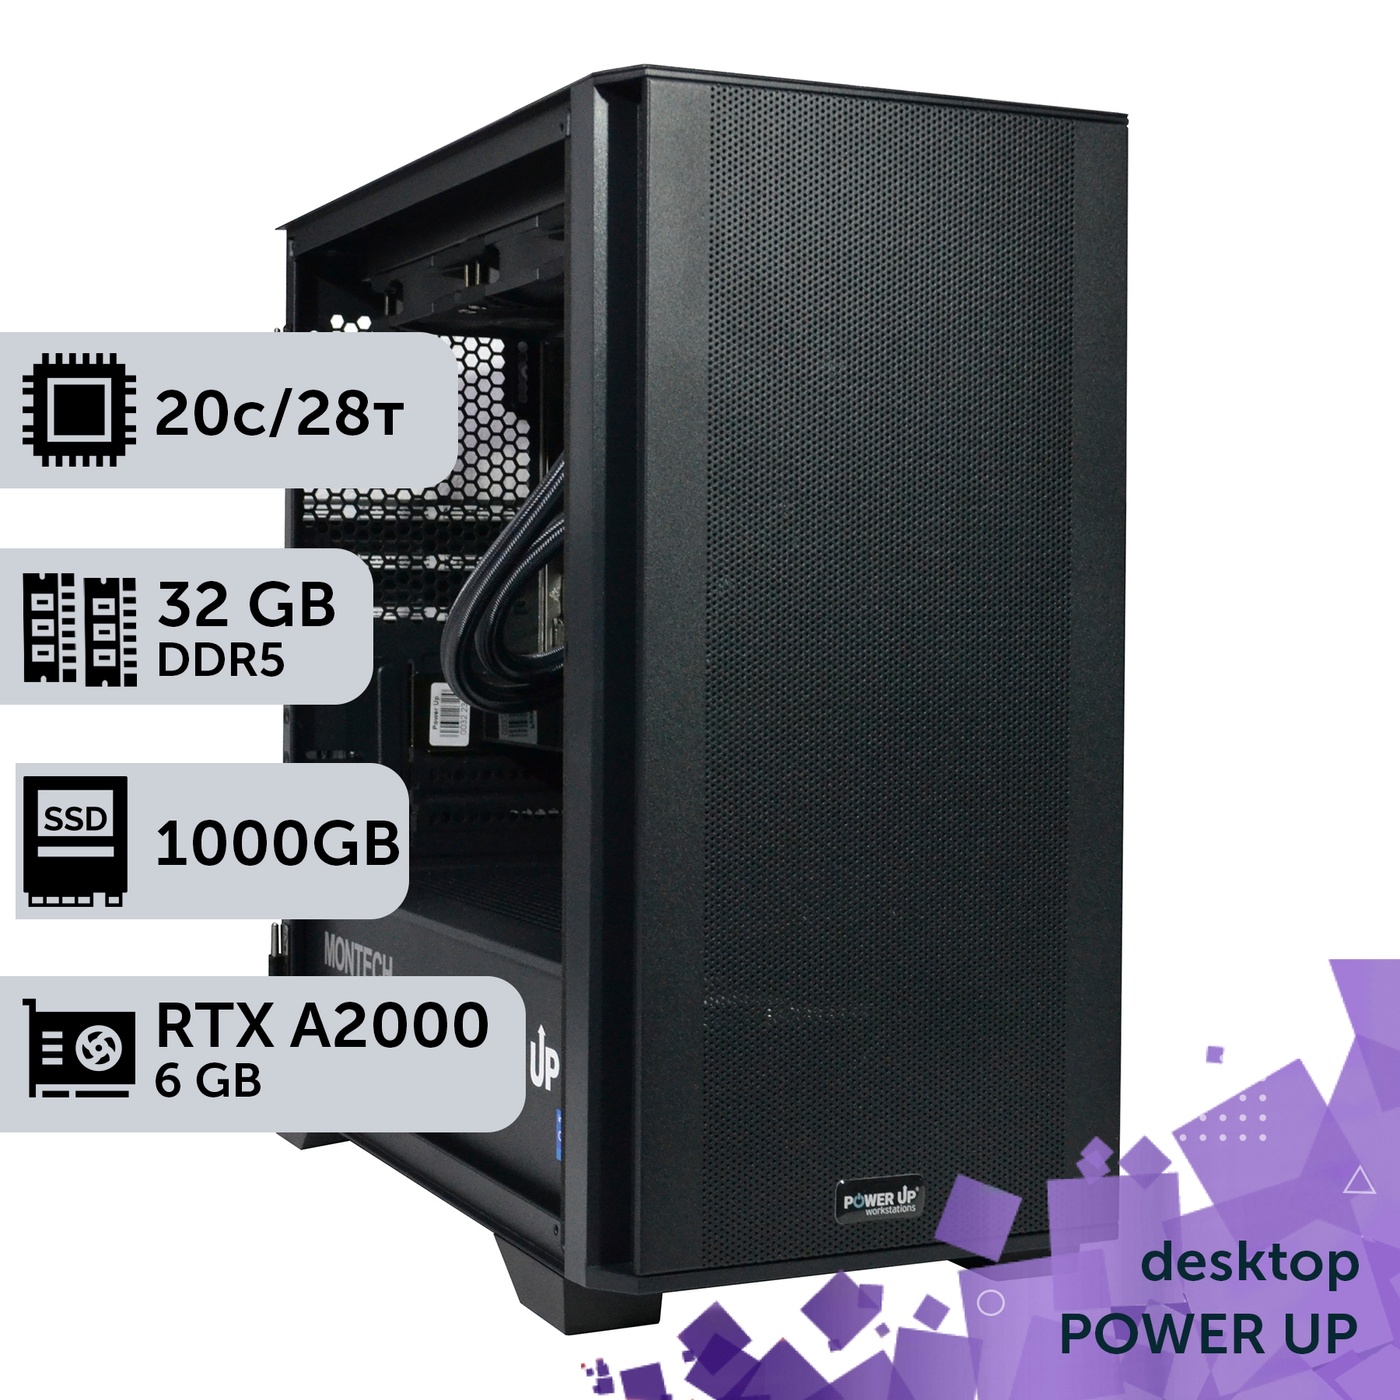 Рабочая станция PowerUp Desktop #310 Core i7 14700K/32 GB/SSD 1TB/NVIDIA Quadro RTX A2000 6GB